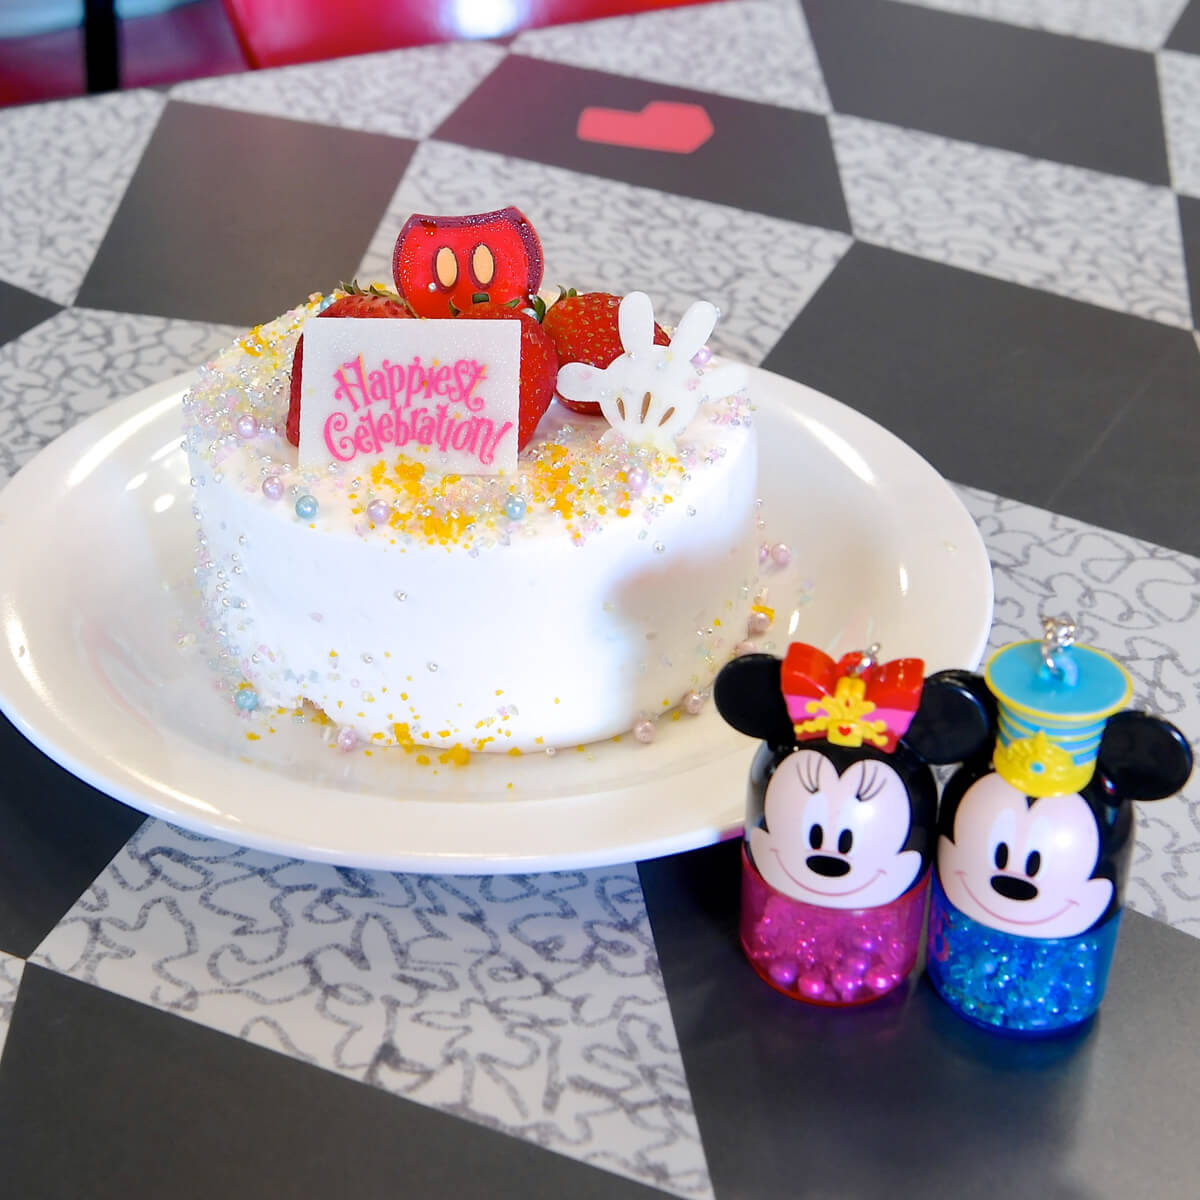 35周年をホールケーキでお祝い 東京ディズニーリゾート35周年 Happiest Celebration スペシャルケーキ